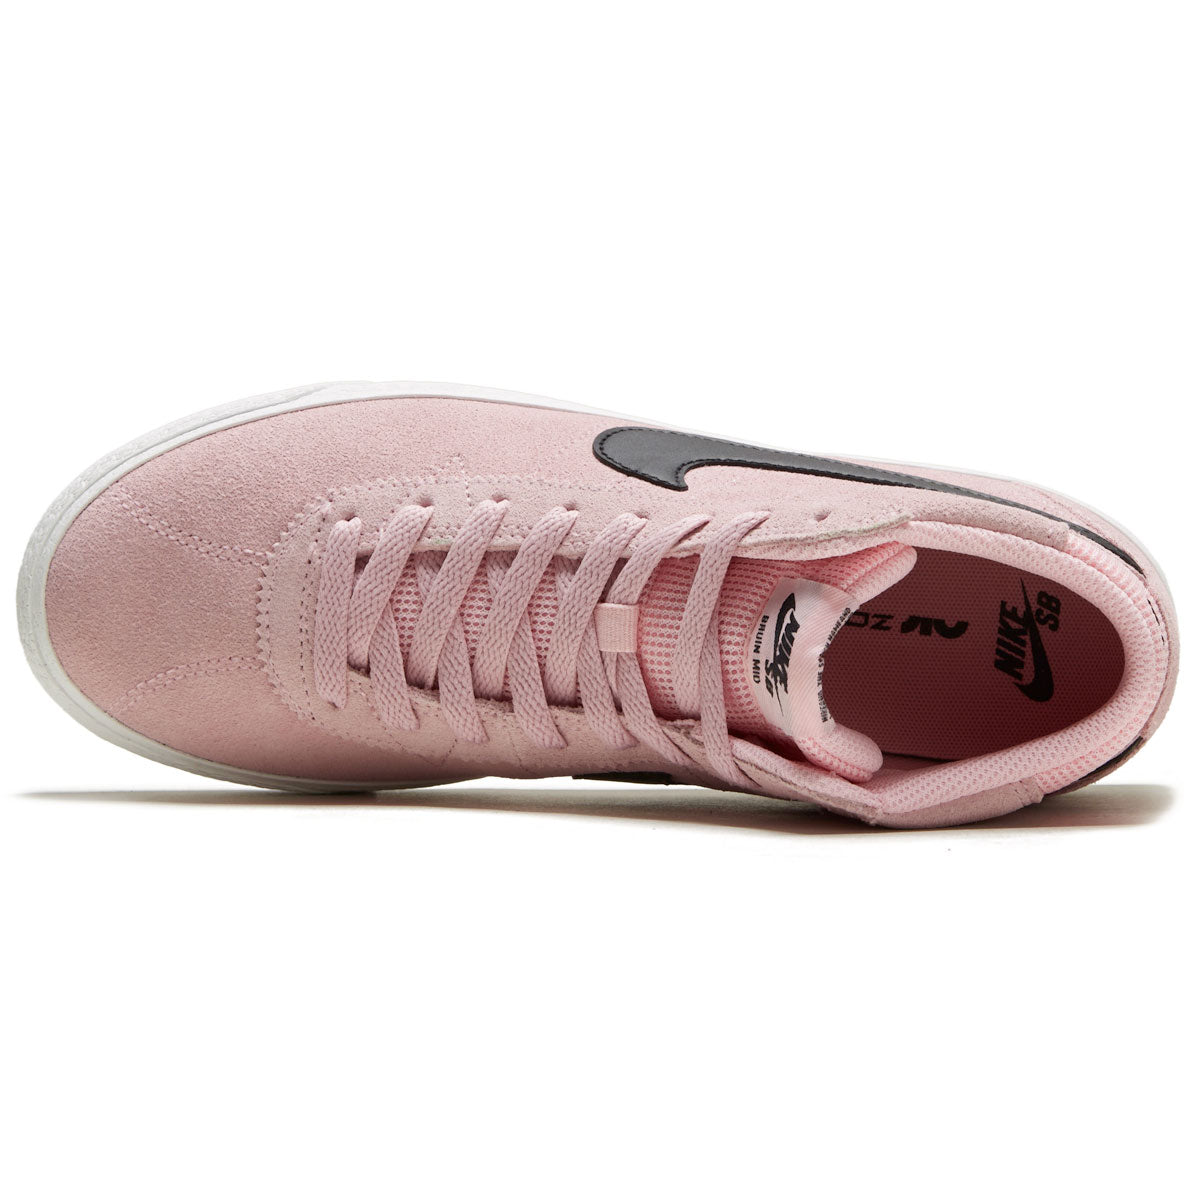 Nike SB Womens Bruin High Shoes - Med Soft Pink/Black/Med Soft Pink – CCS